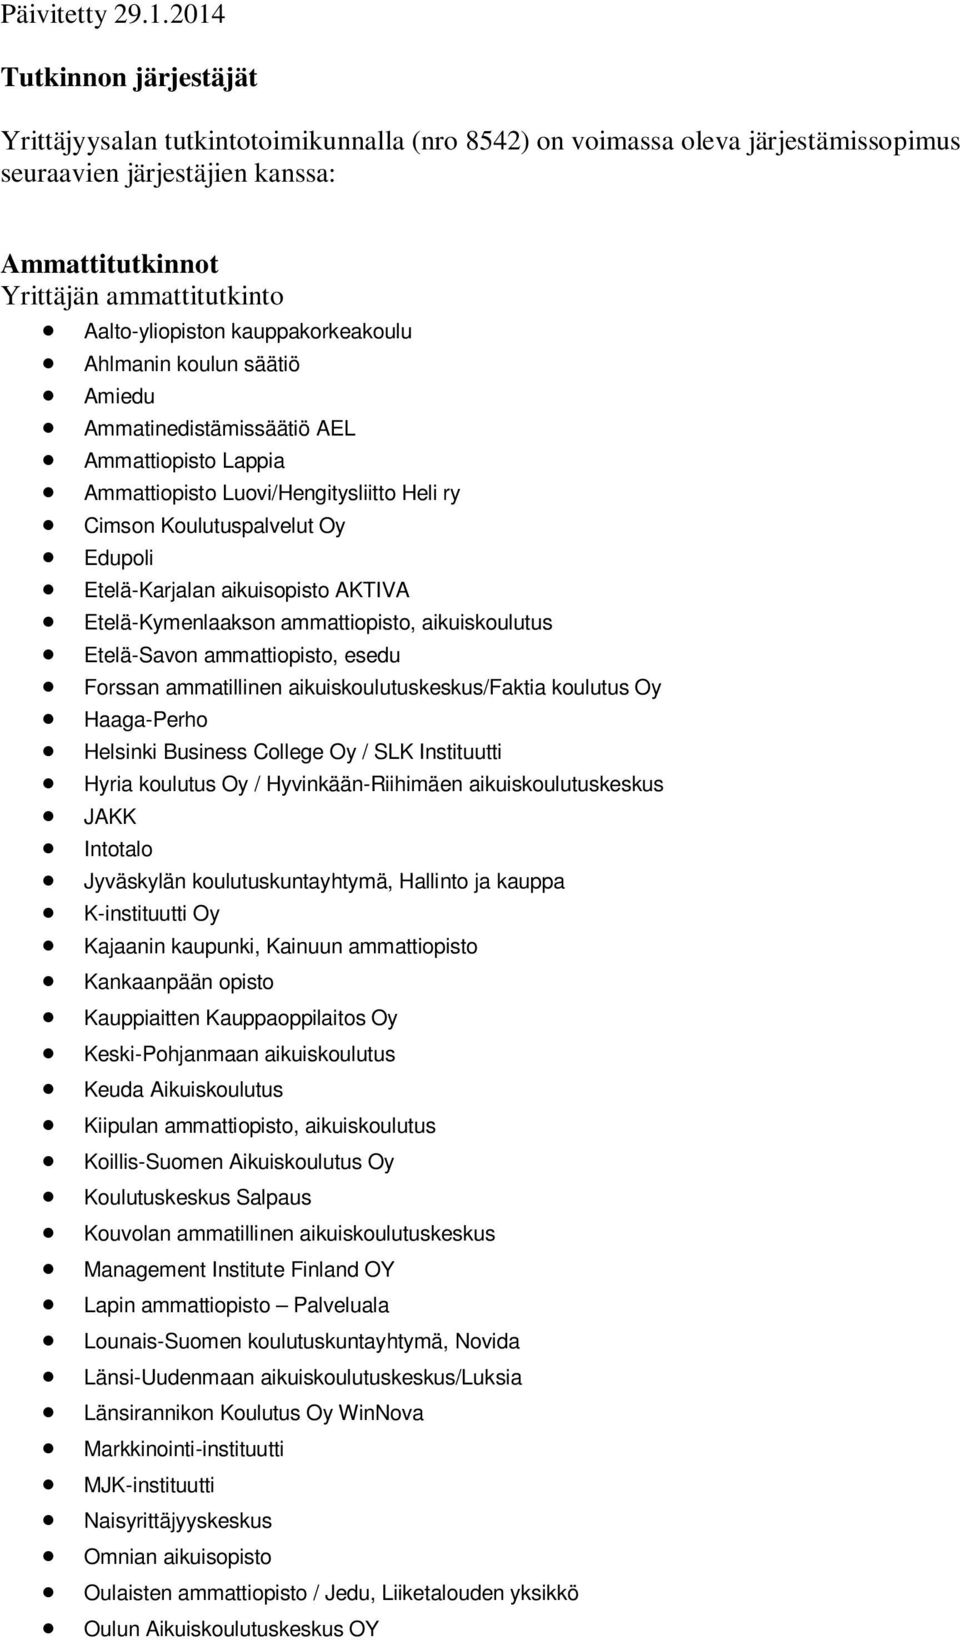 Helsinki Business College Oy / SLK Instituutti JAKK Intotalo Jyväskylän koulutuskuntayhtymä, Hallinto ja kauppa Kajaanin kaupunki, Kainuun ammattiopisto Kankaanpään opisto Kauppiaitten